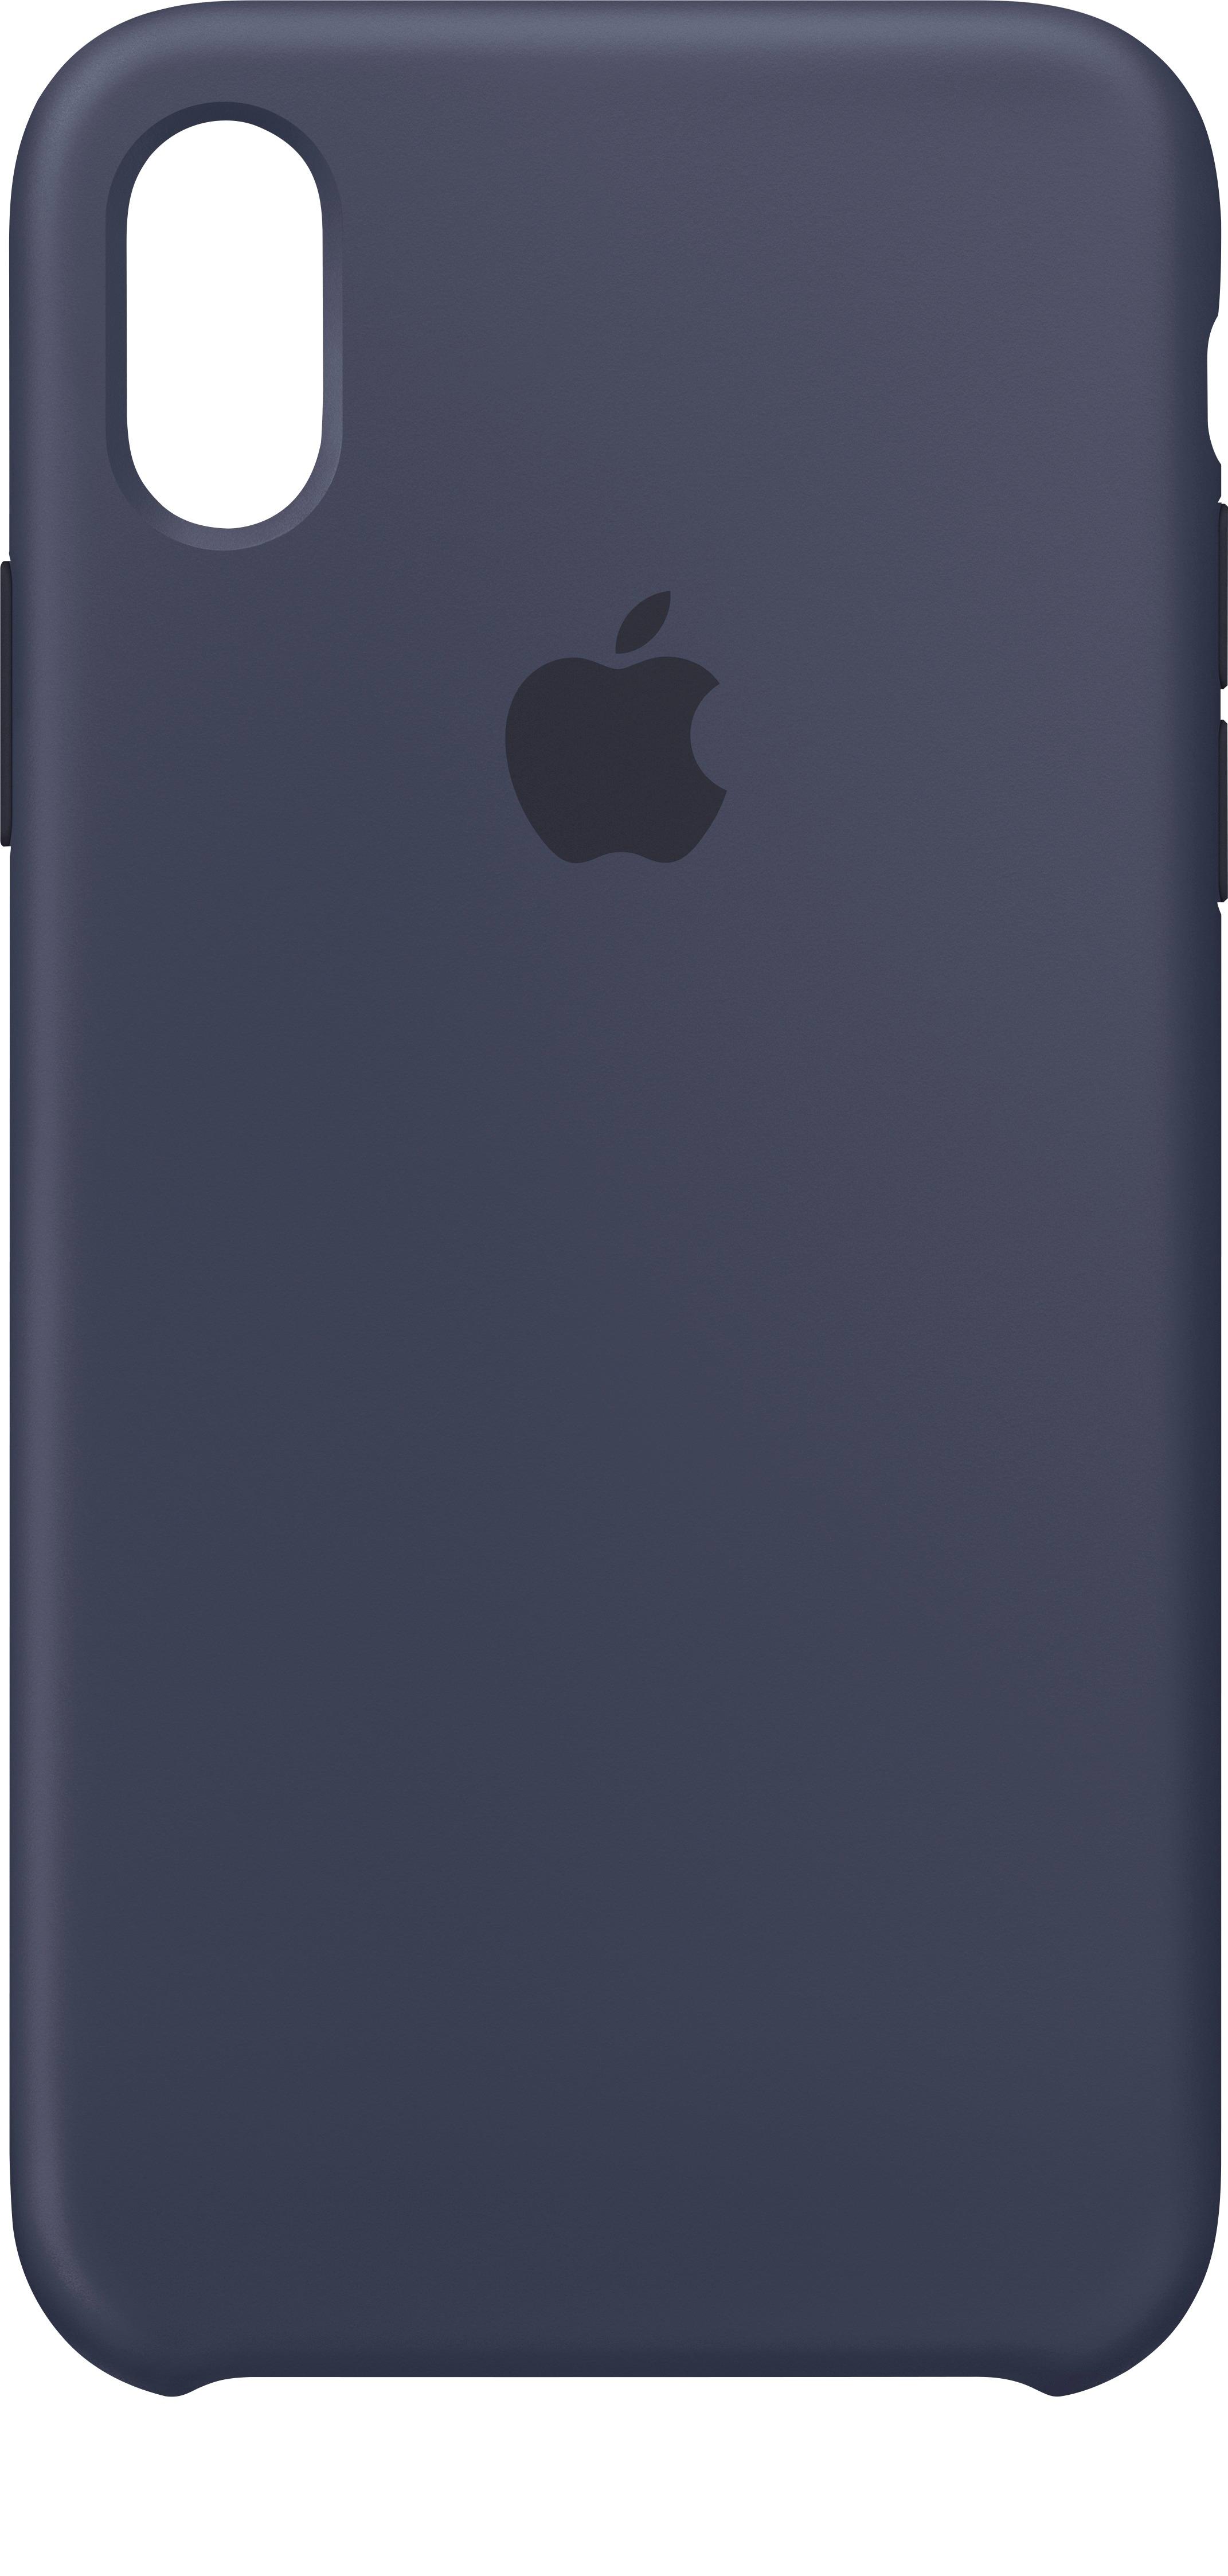 Ijsbeer vertrekken Inleg Apple iPhone® X Silicone Case Midnight Blue 010KF0703 - Best Buy